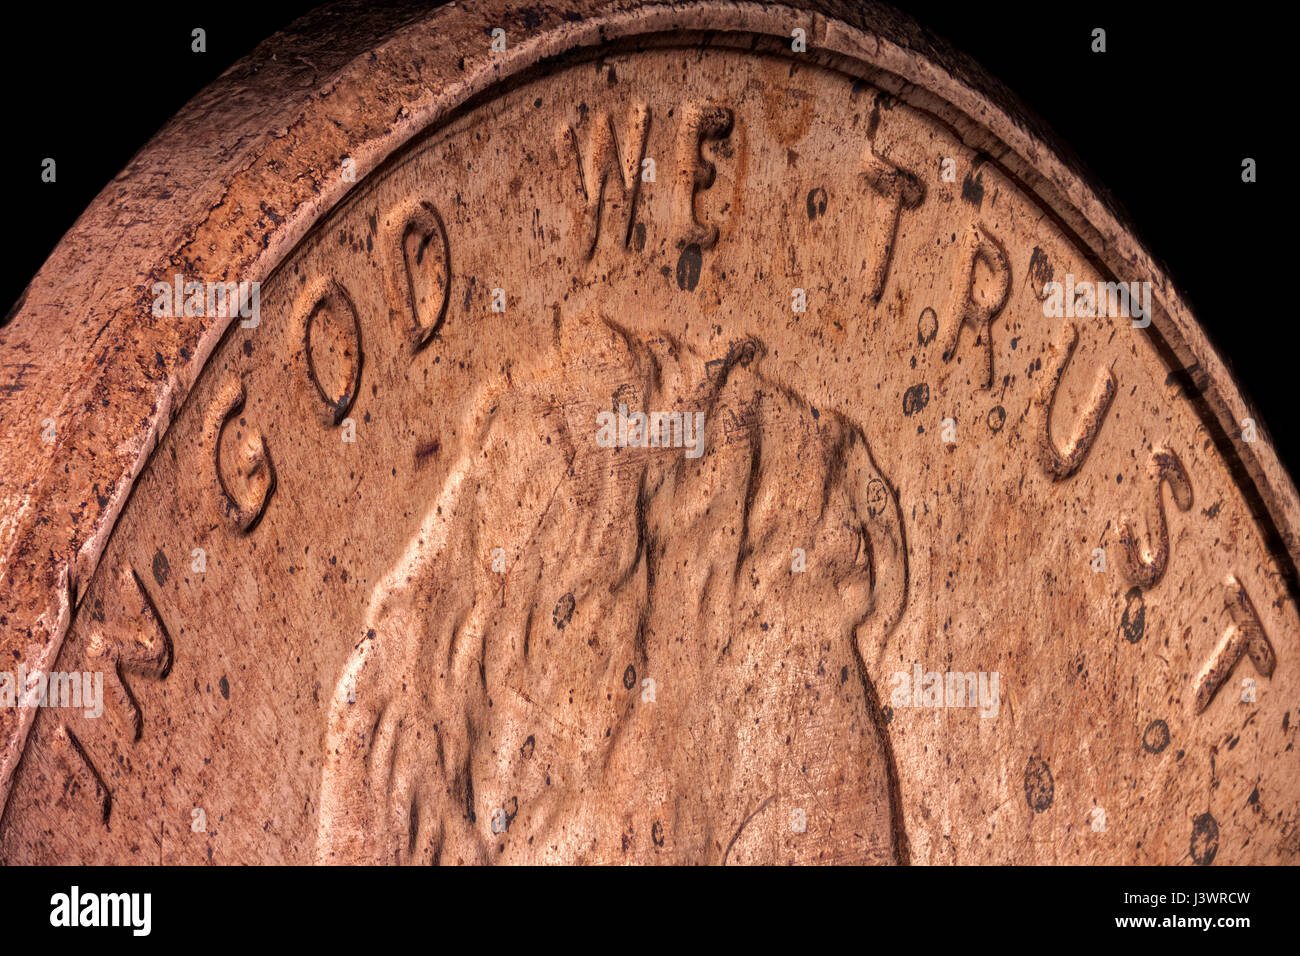 Macro extrême, précise et détaillée, d'un Américain penny en cuivre, soulignant la devise officielle de l'United States : In God we trust Banque D'Images